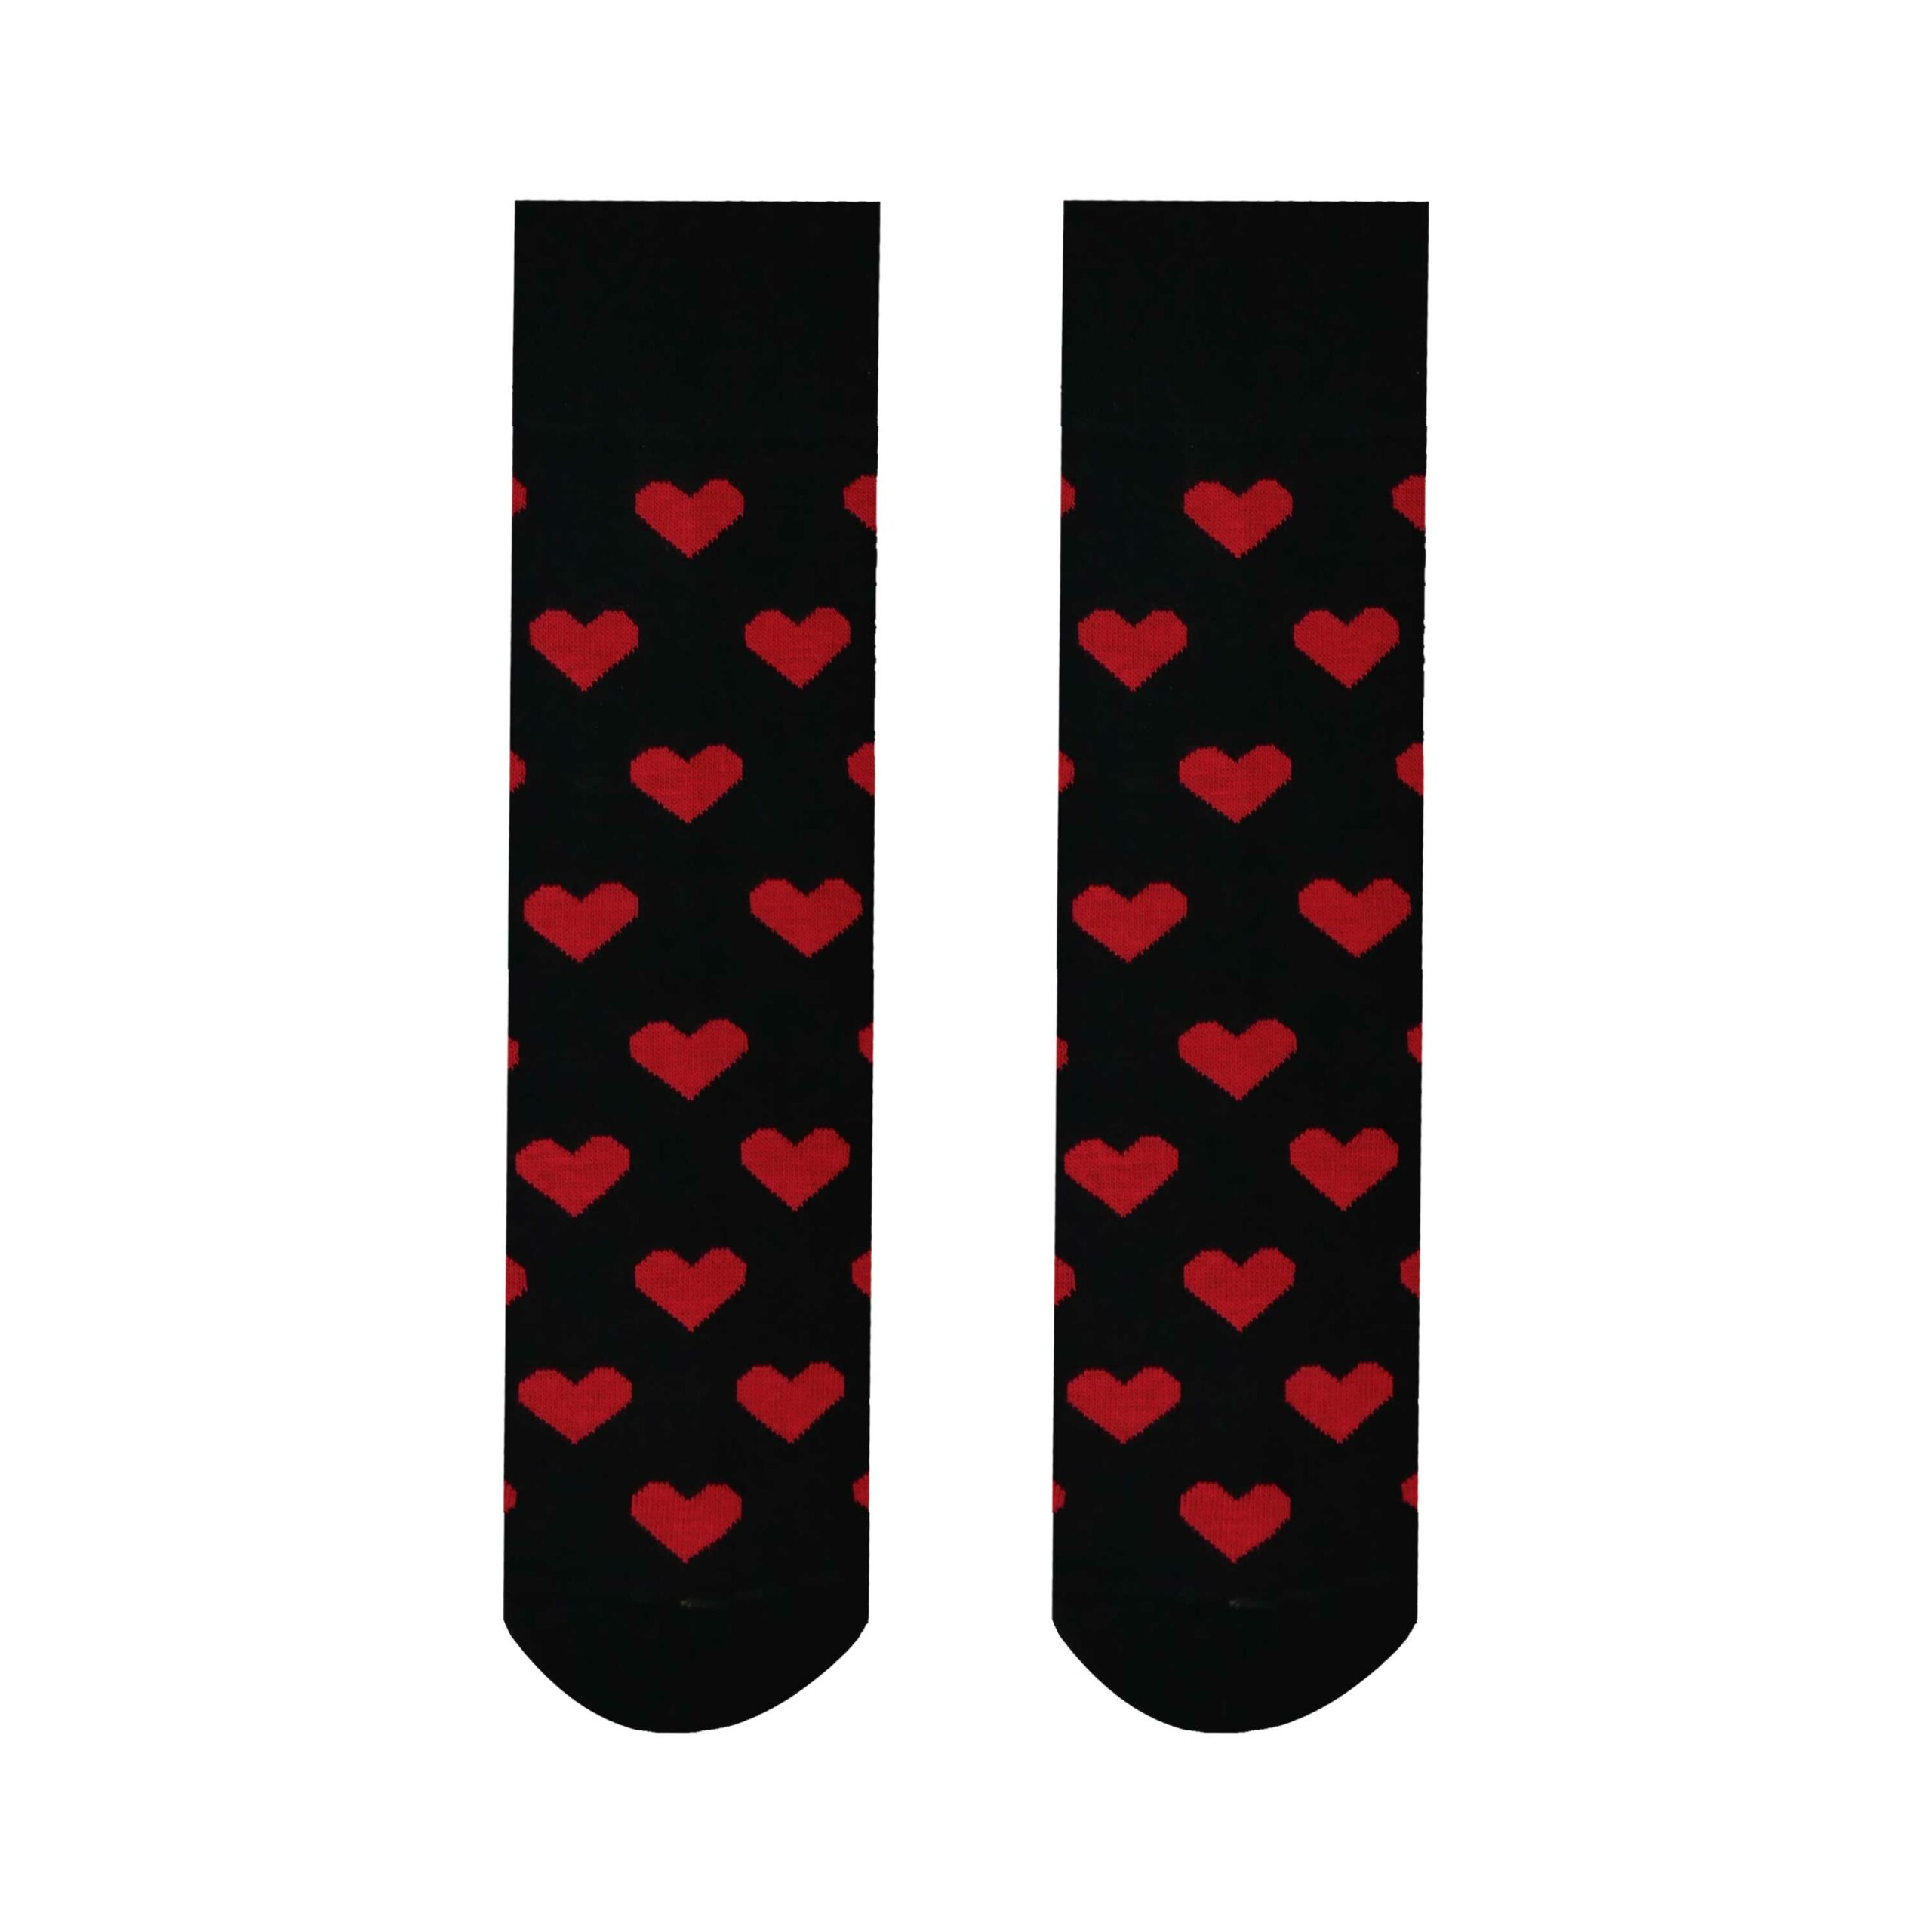 Unisex ponožky Malé srdiečka čierne HestySocks (veľkosť: 43-46)